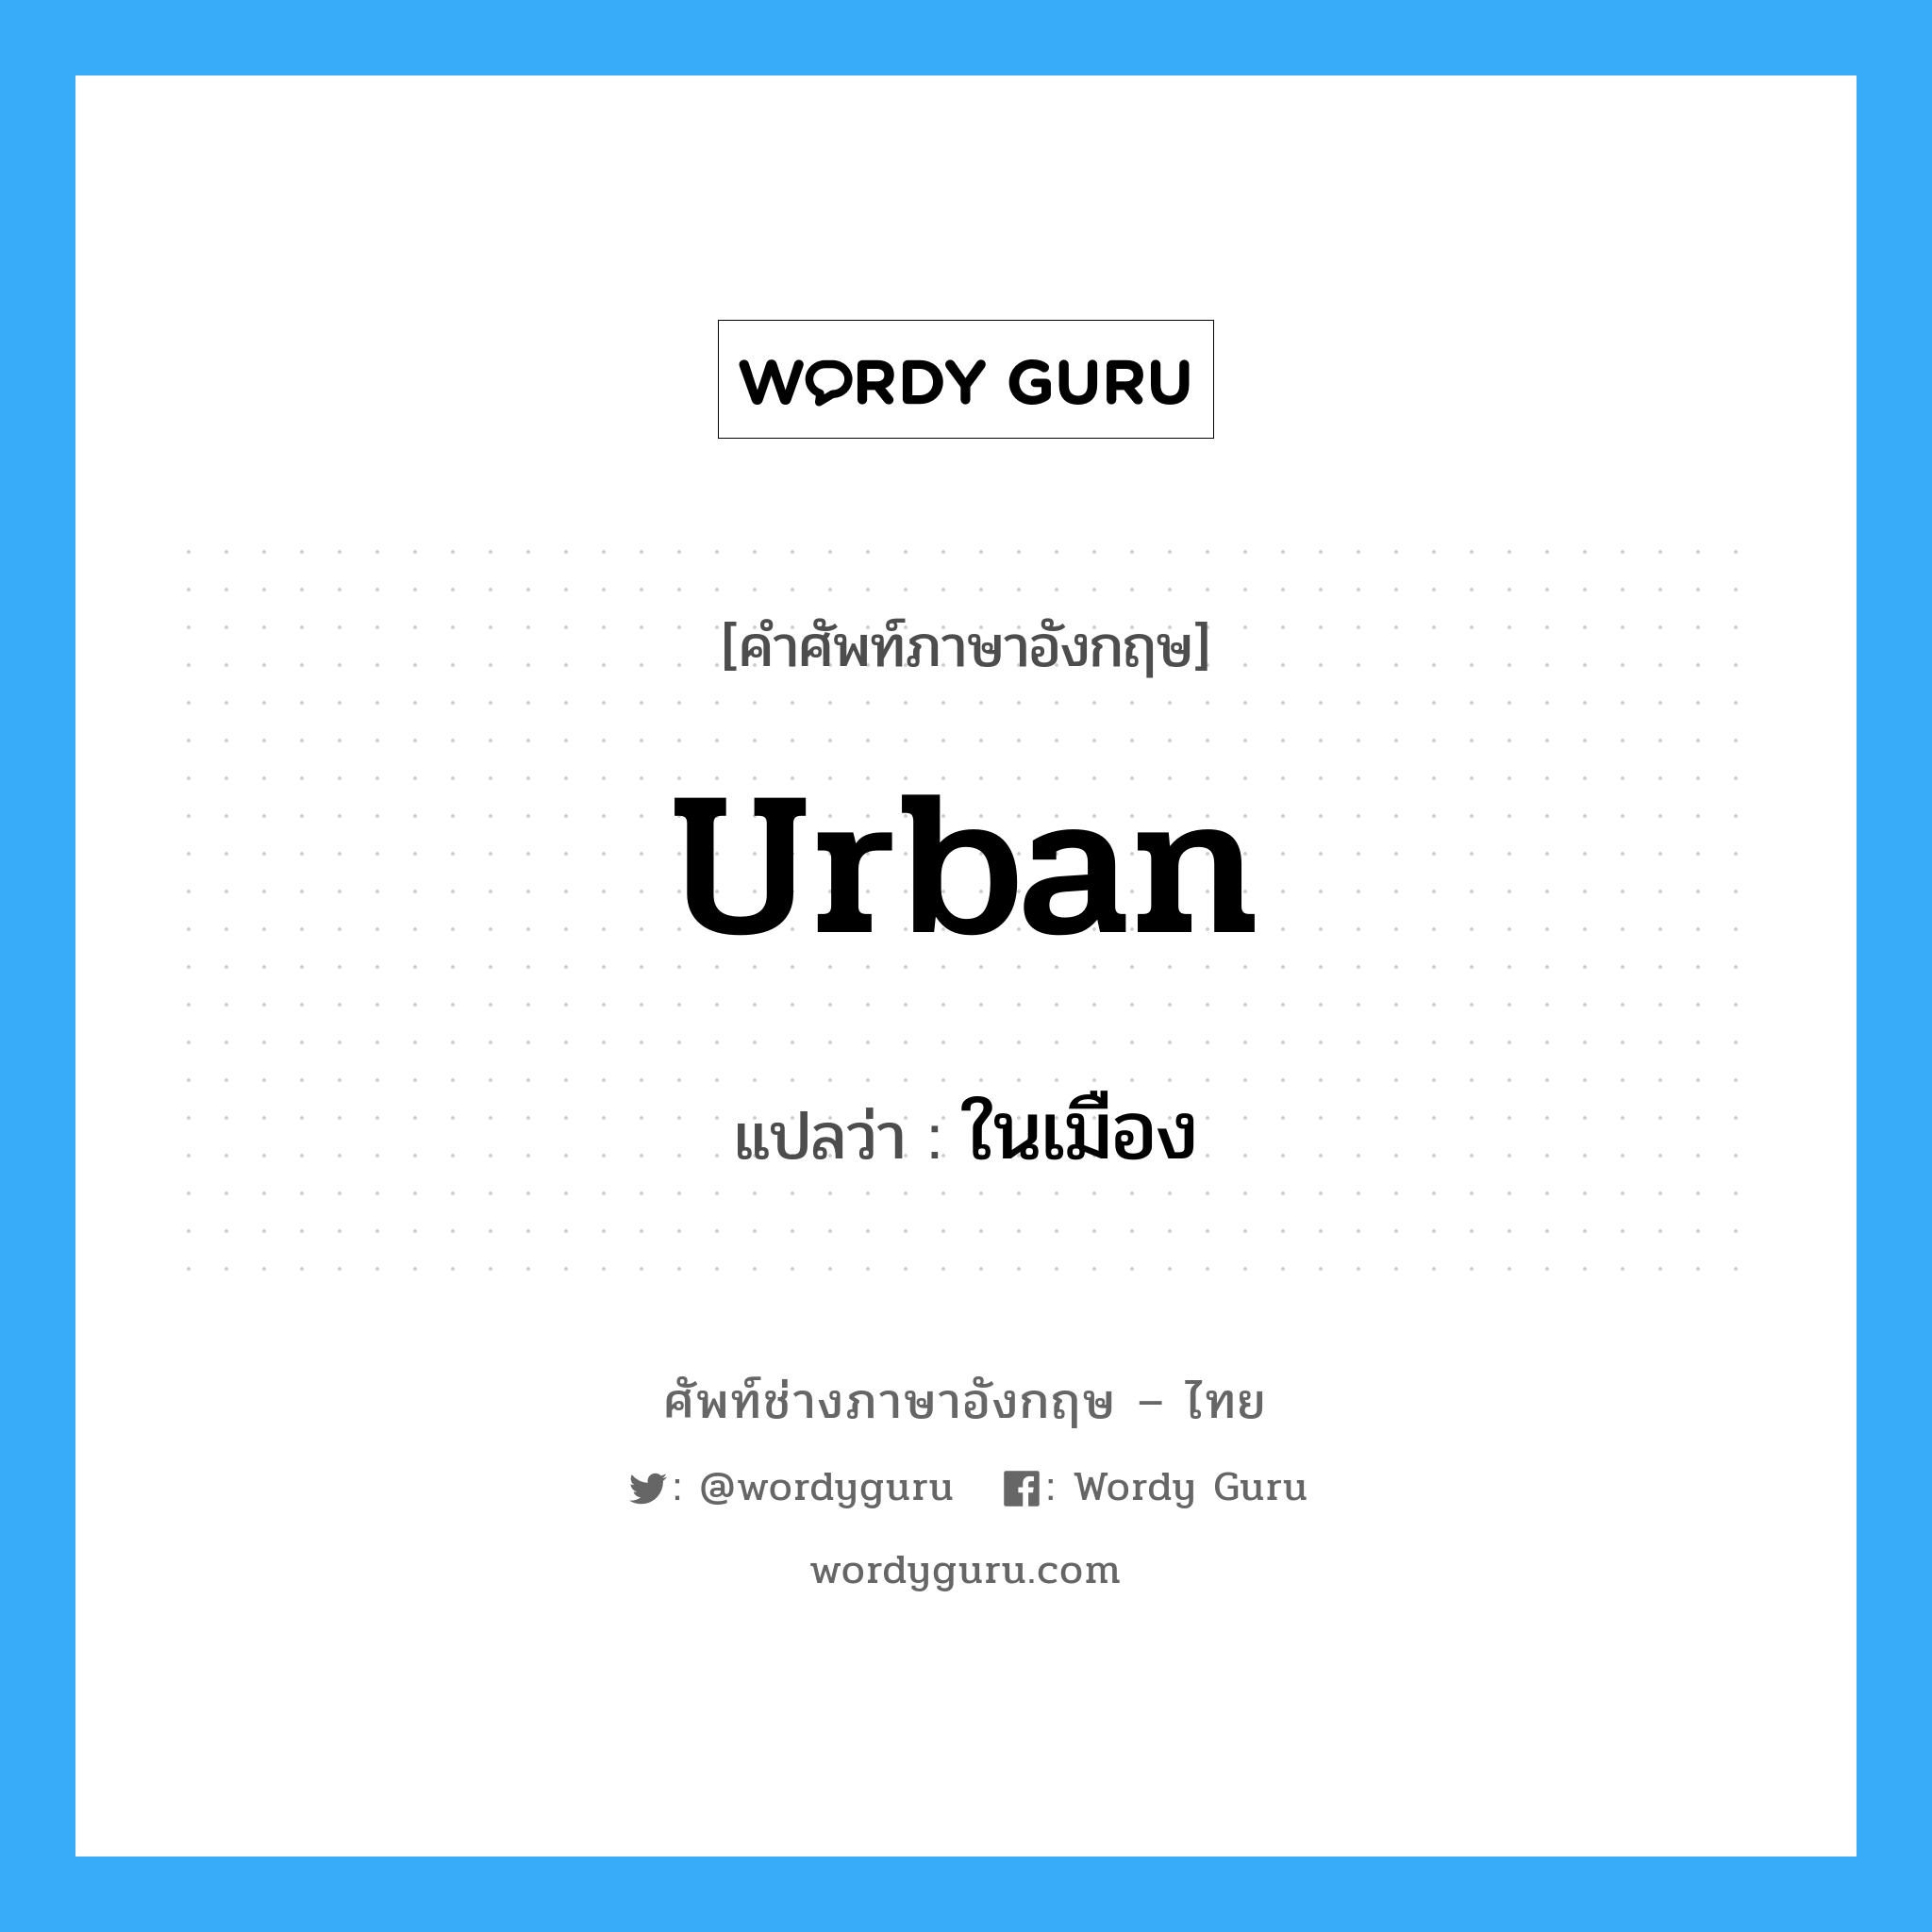 ในเมือง ภาษาอังกฤษ?, คำศัพท์ช่างภาษาอังกฤษ - ไทย ในเมือง คำศัพท์ภาษาอังกฤษ ในเมือง แปลว่า urban